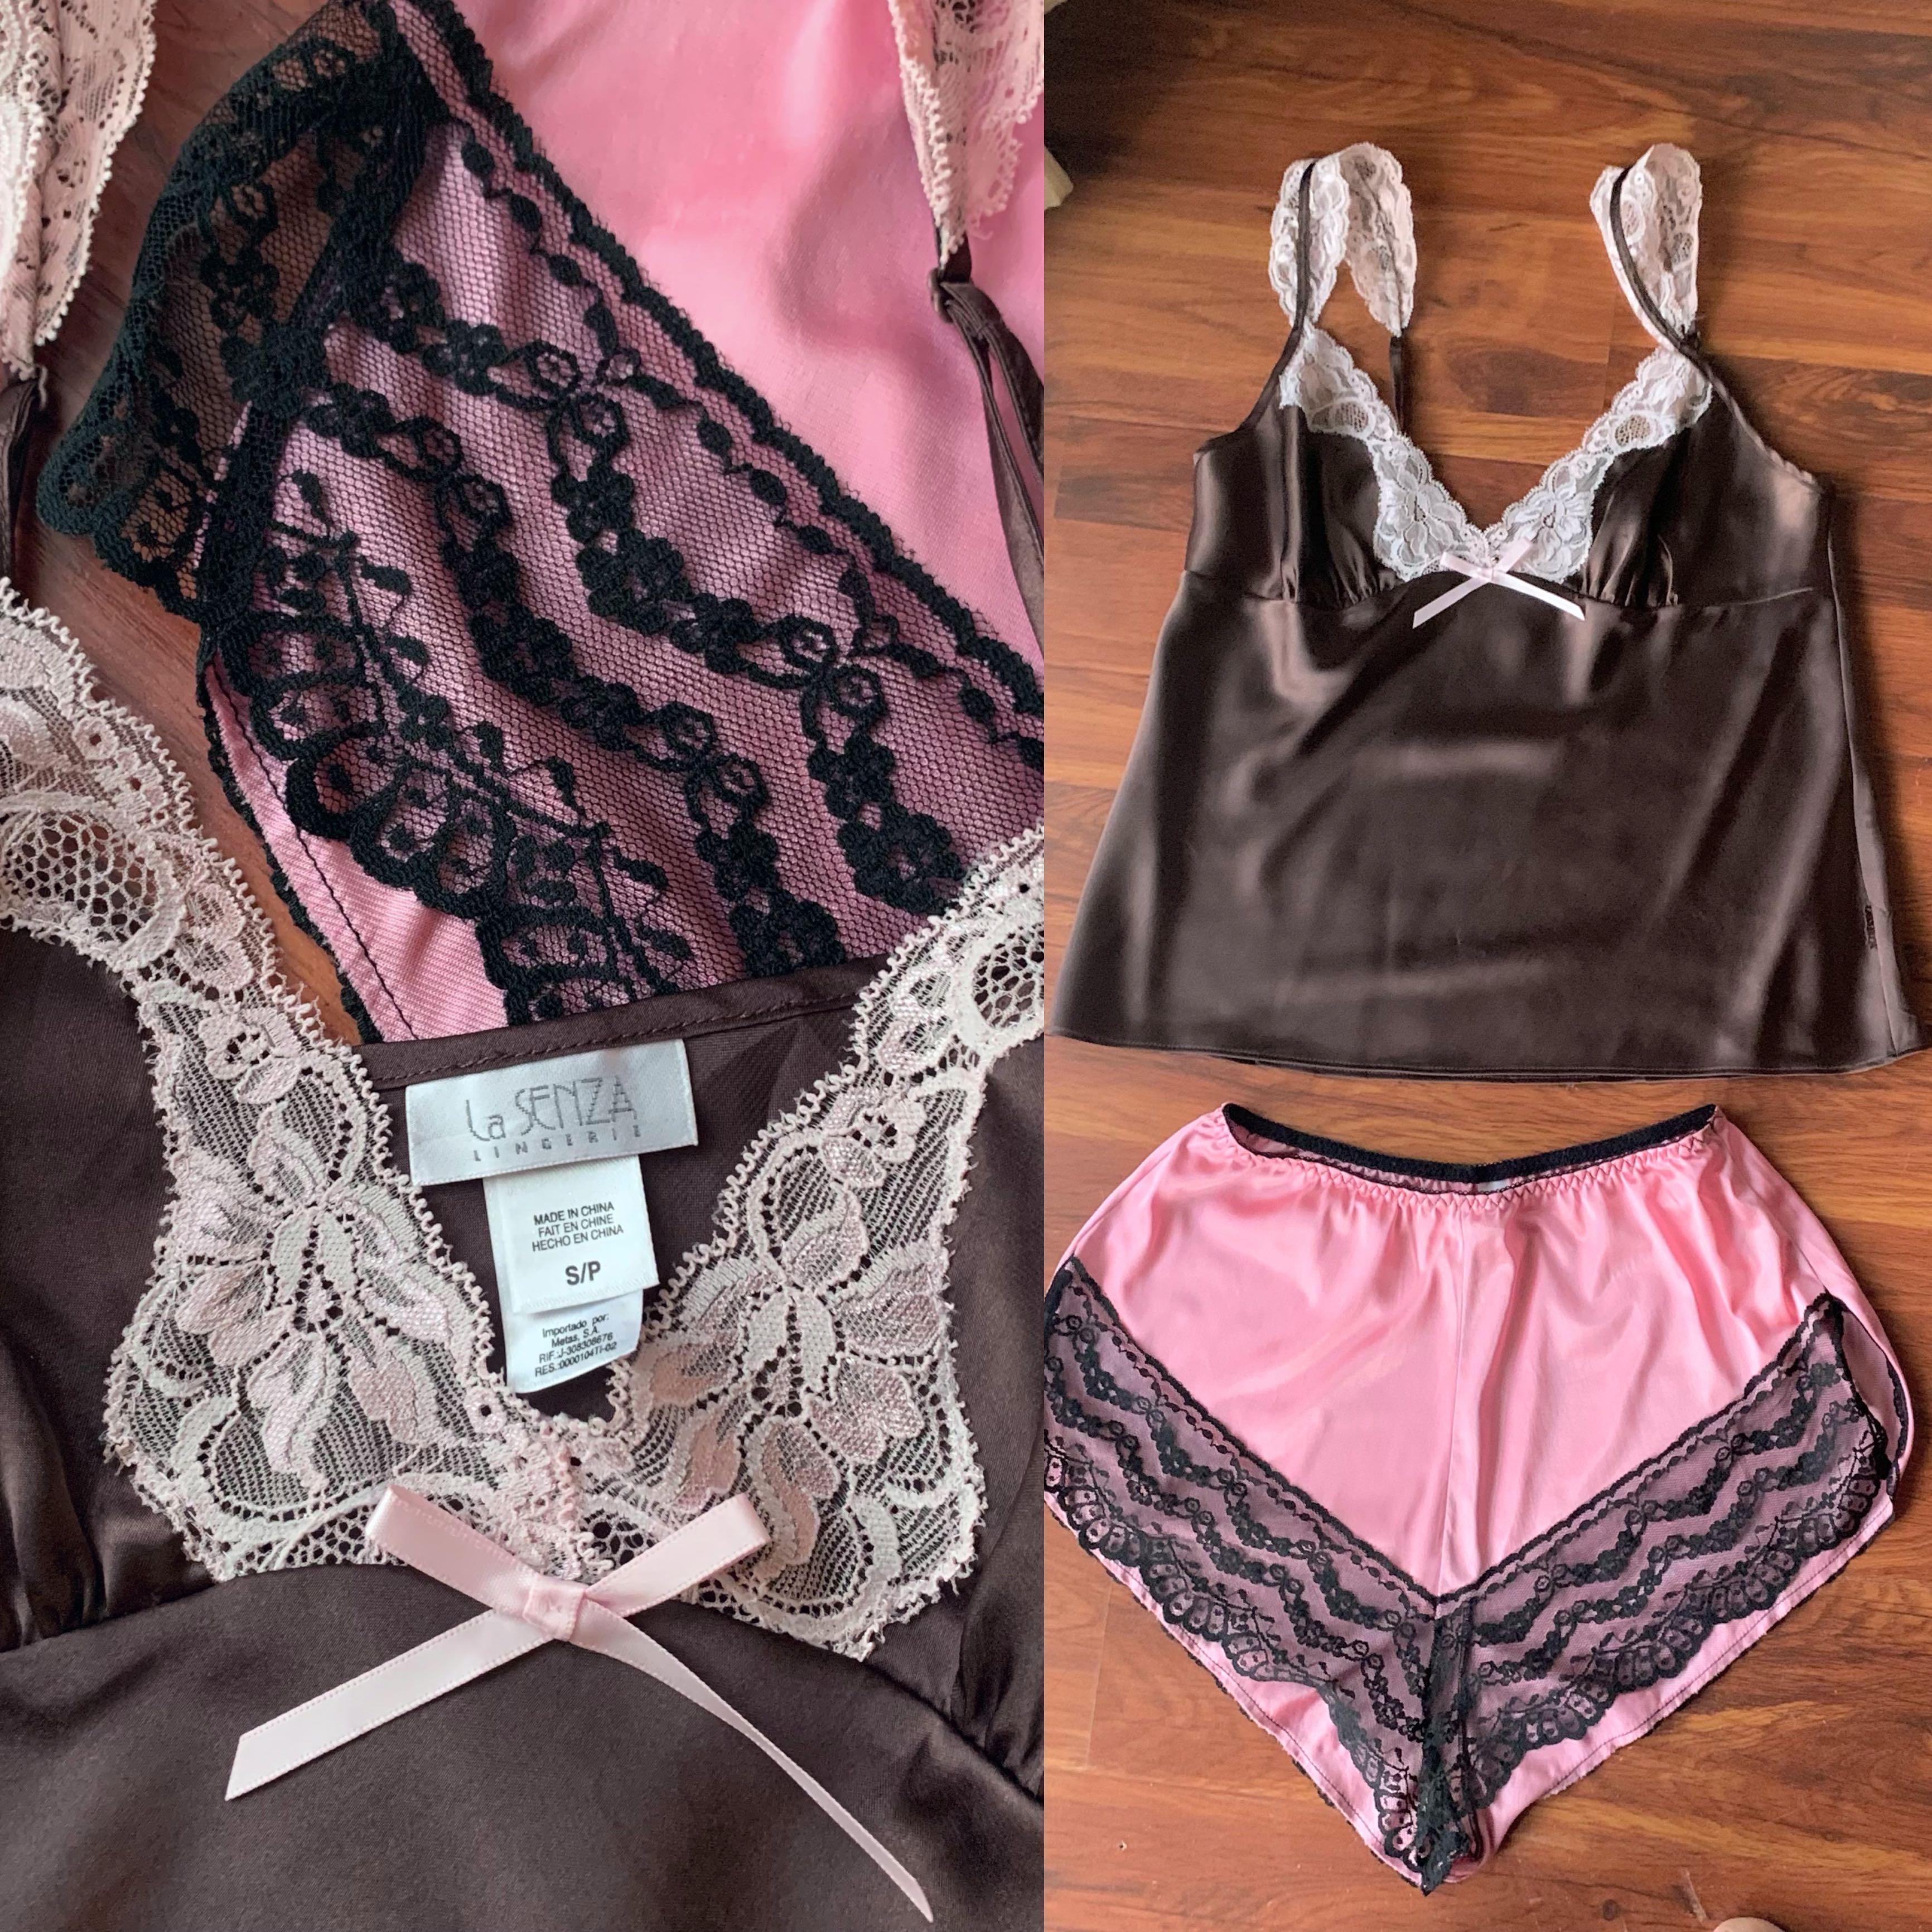 La Senza Satin Lace Top Brown Combo Set Pink Shorts Pants Lingerie  Nightwear Sleepwear Loungewear, Women's Fashion, New Undergarments &  Loungewear on Carousell